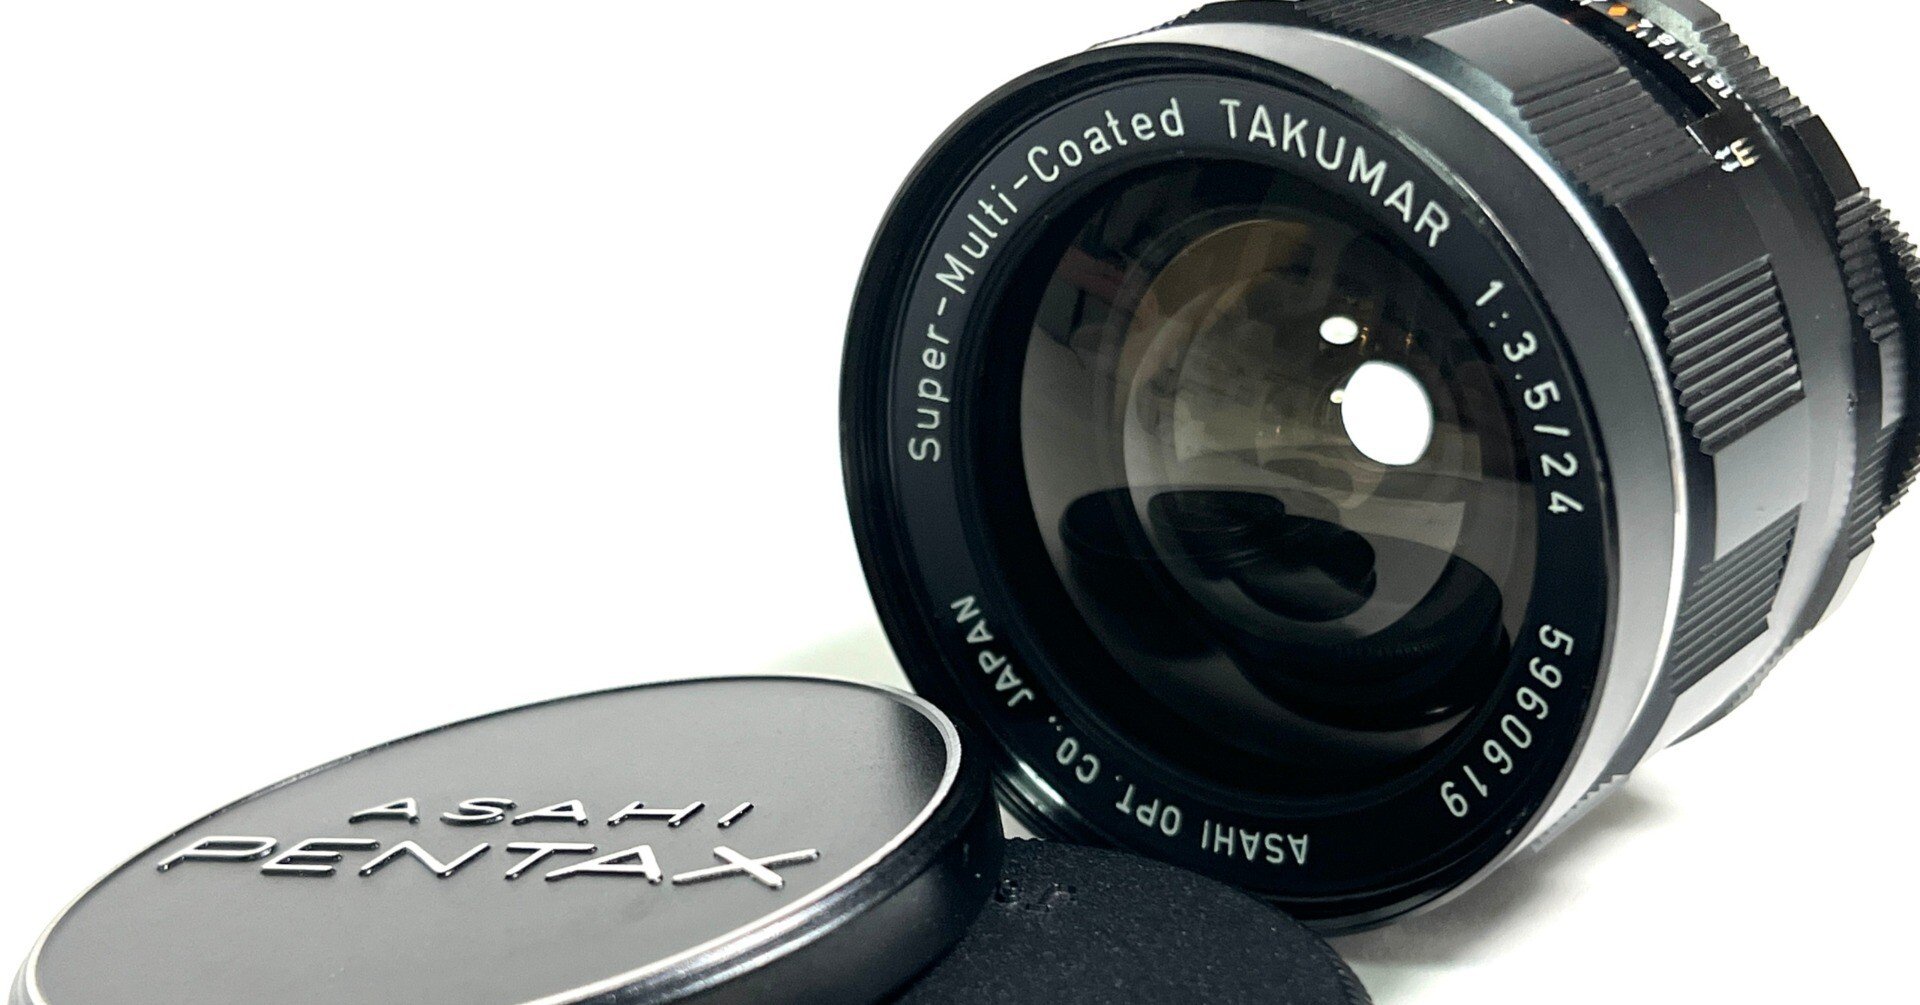 Pentax SMC Takumar 24mm F3.5 純正フード付 L687